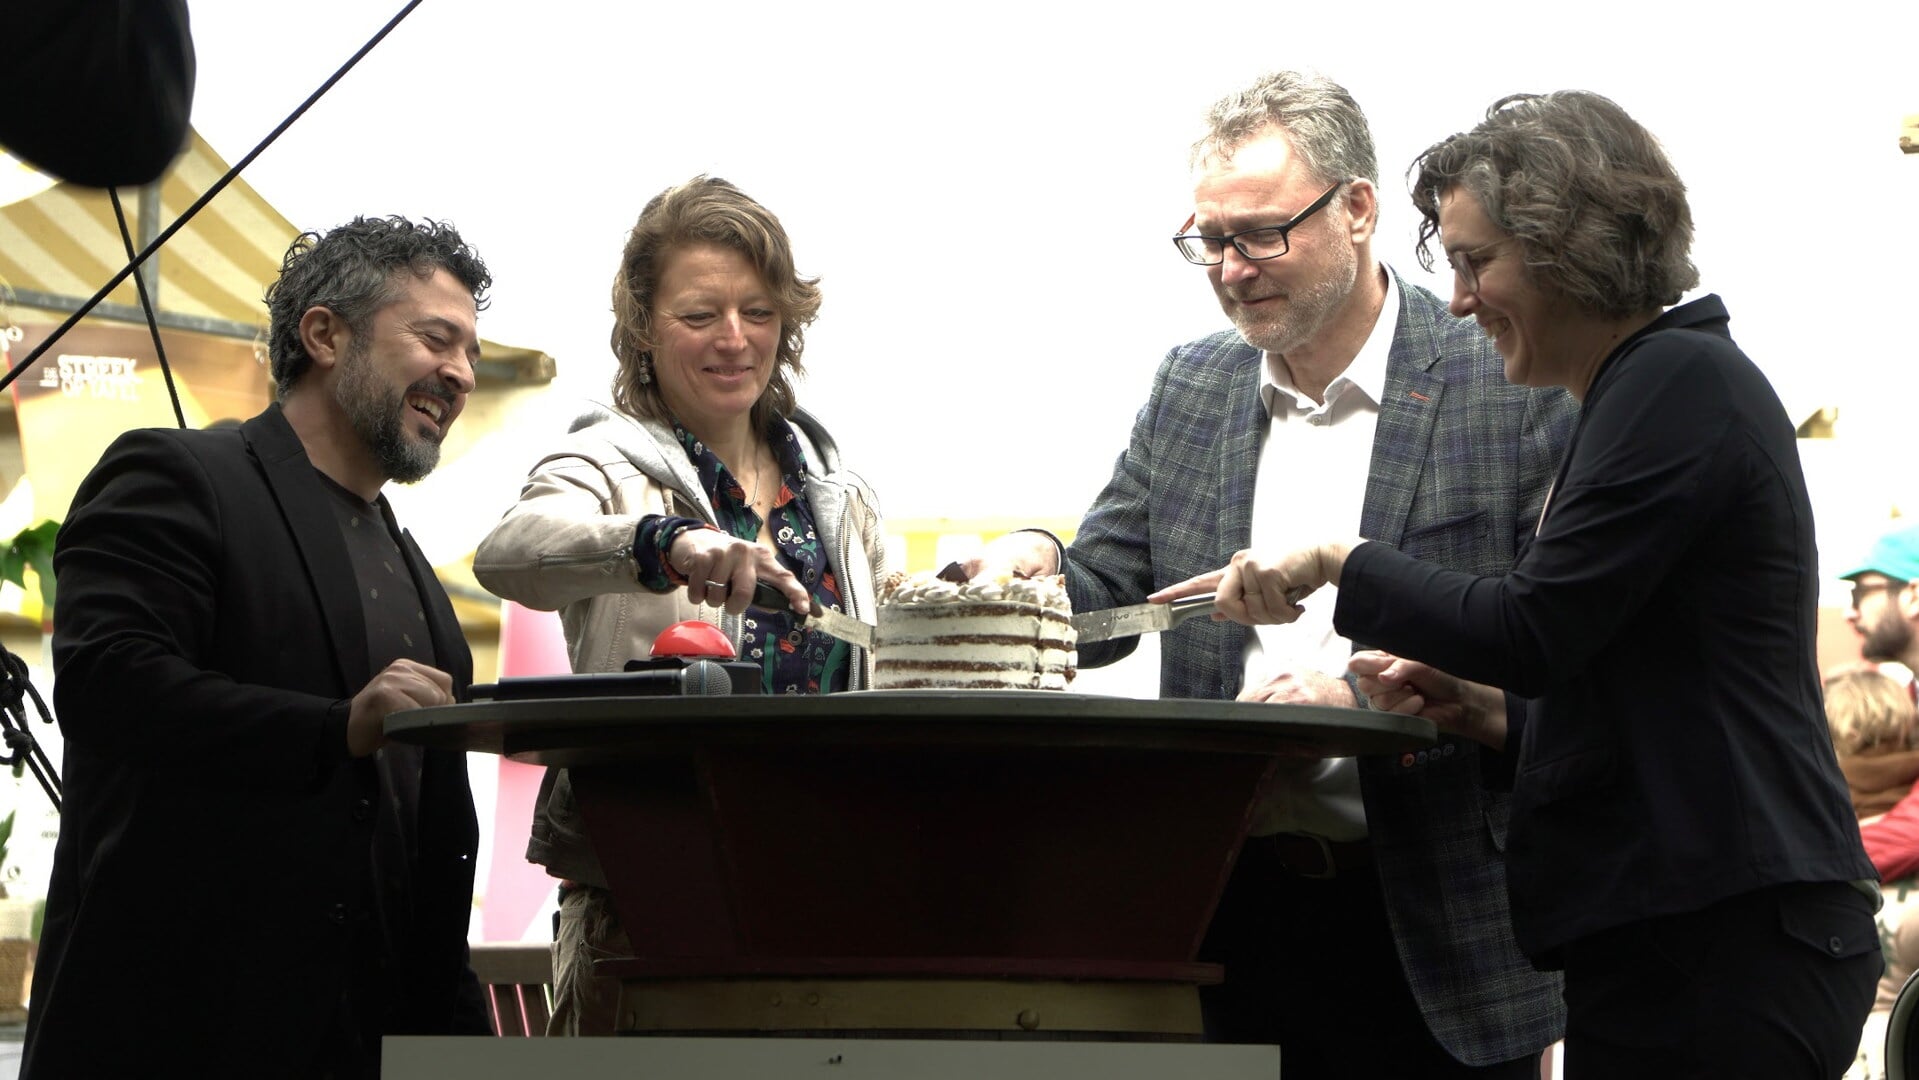 Wethouders Cilia Daemen (geheel rechts ) en Erik Weijers (tweede van rechts) snijden de taart aan.